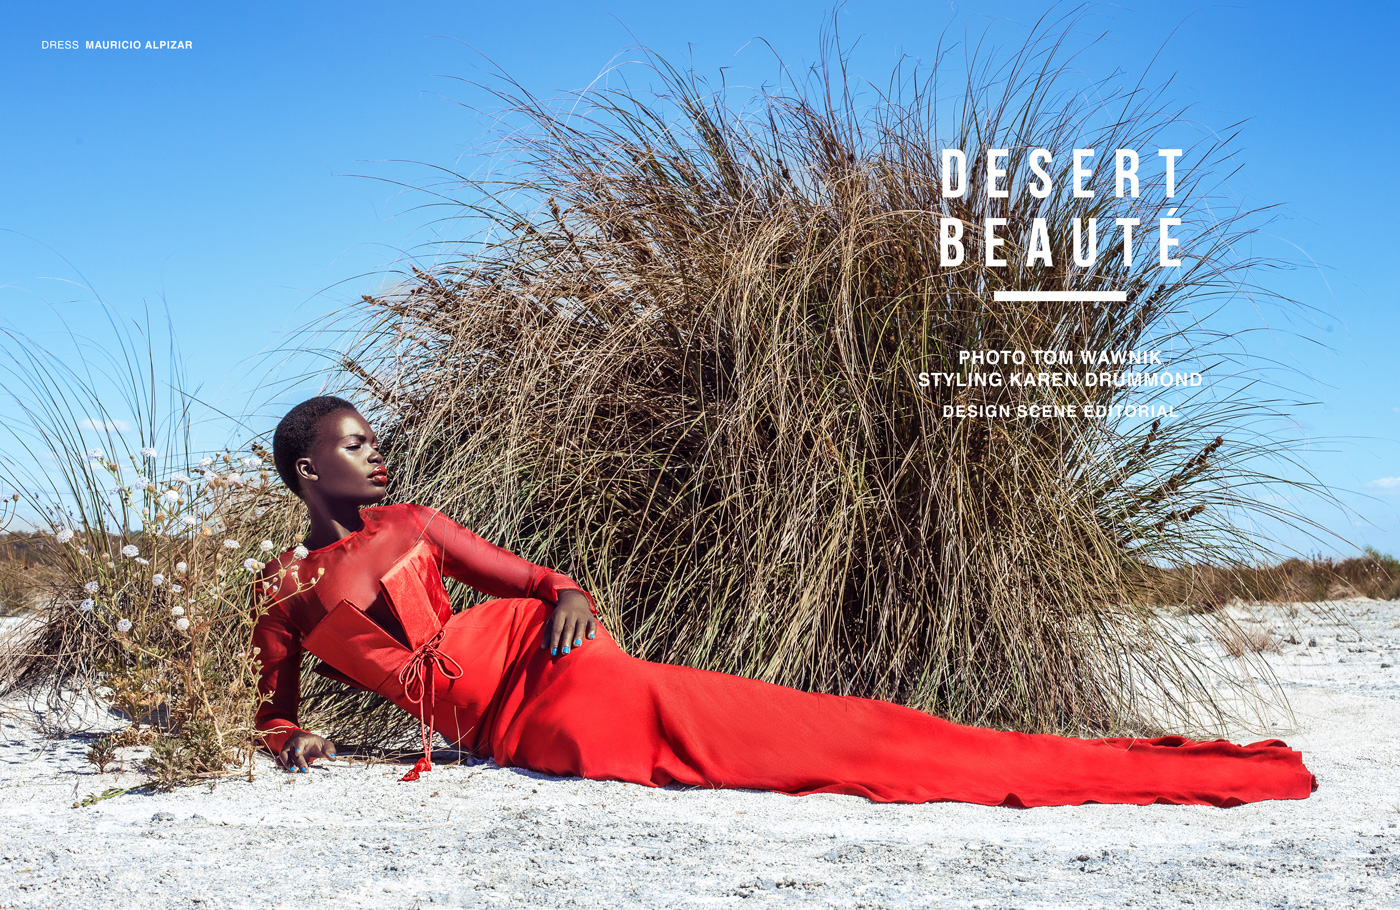 Desert Beauté By Tom Wawnik For Design Scene